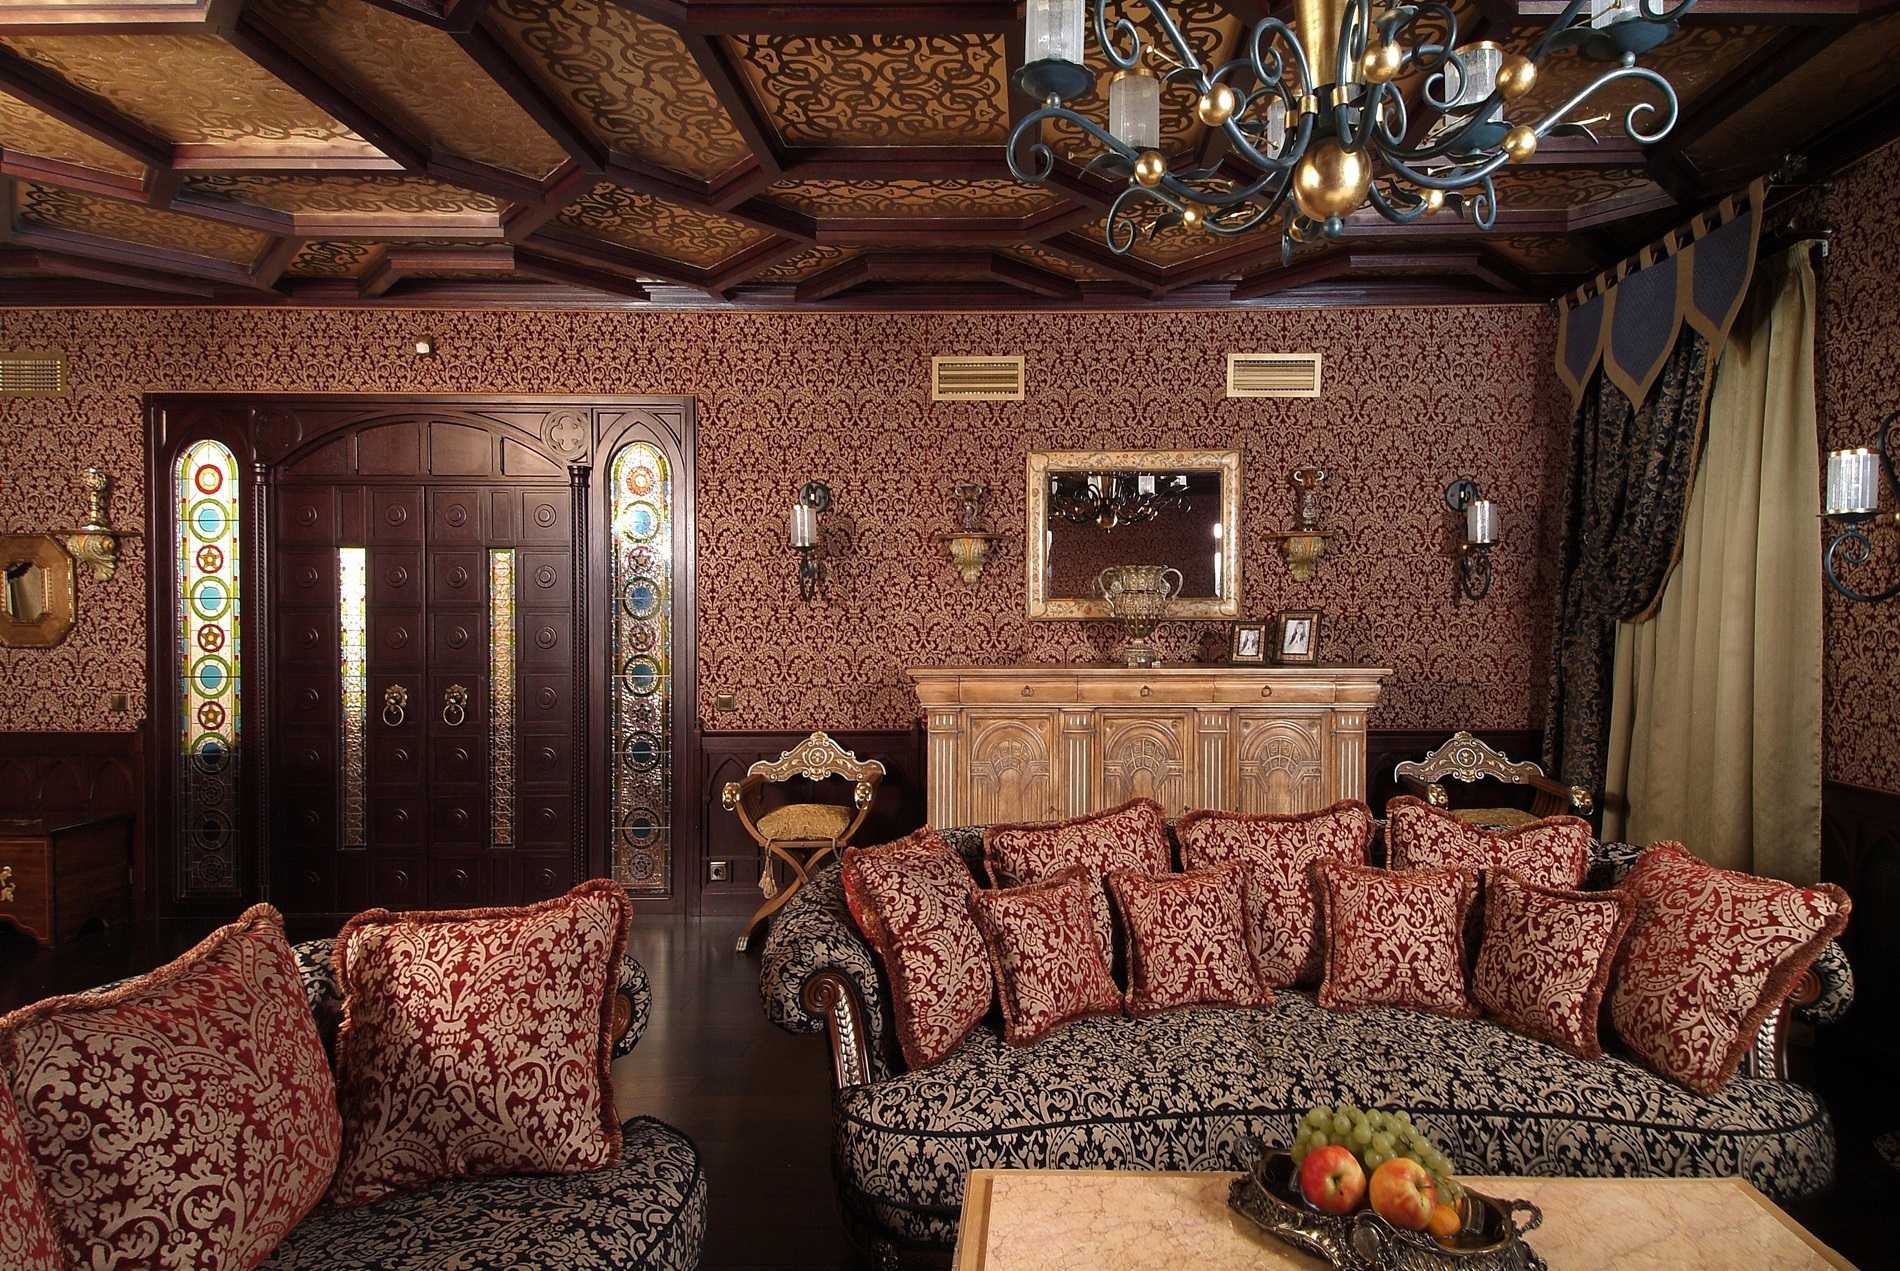 mooi interieur van de slaapkamer in de gotische stijl